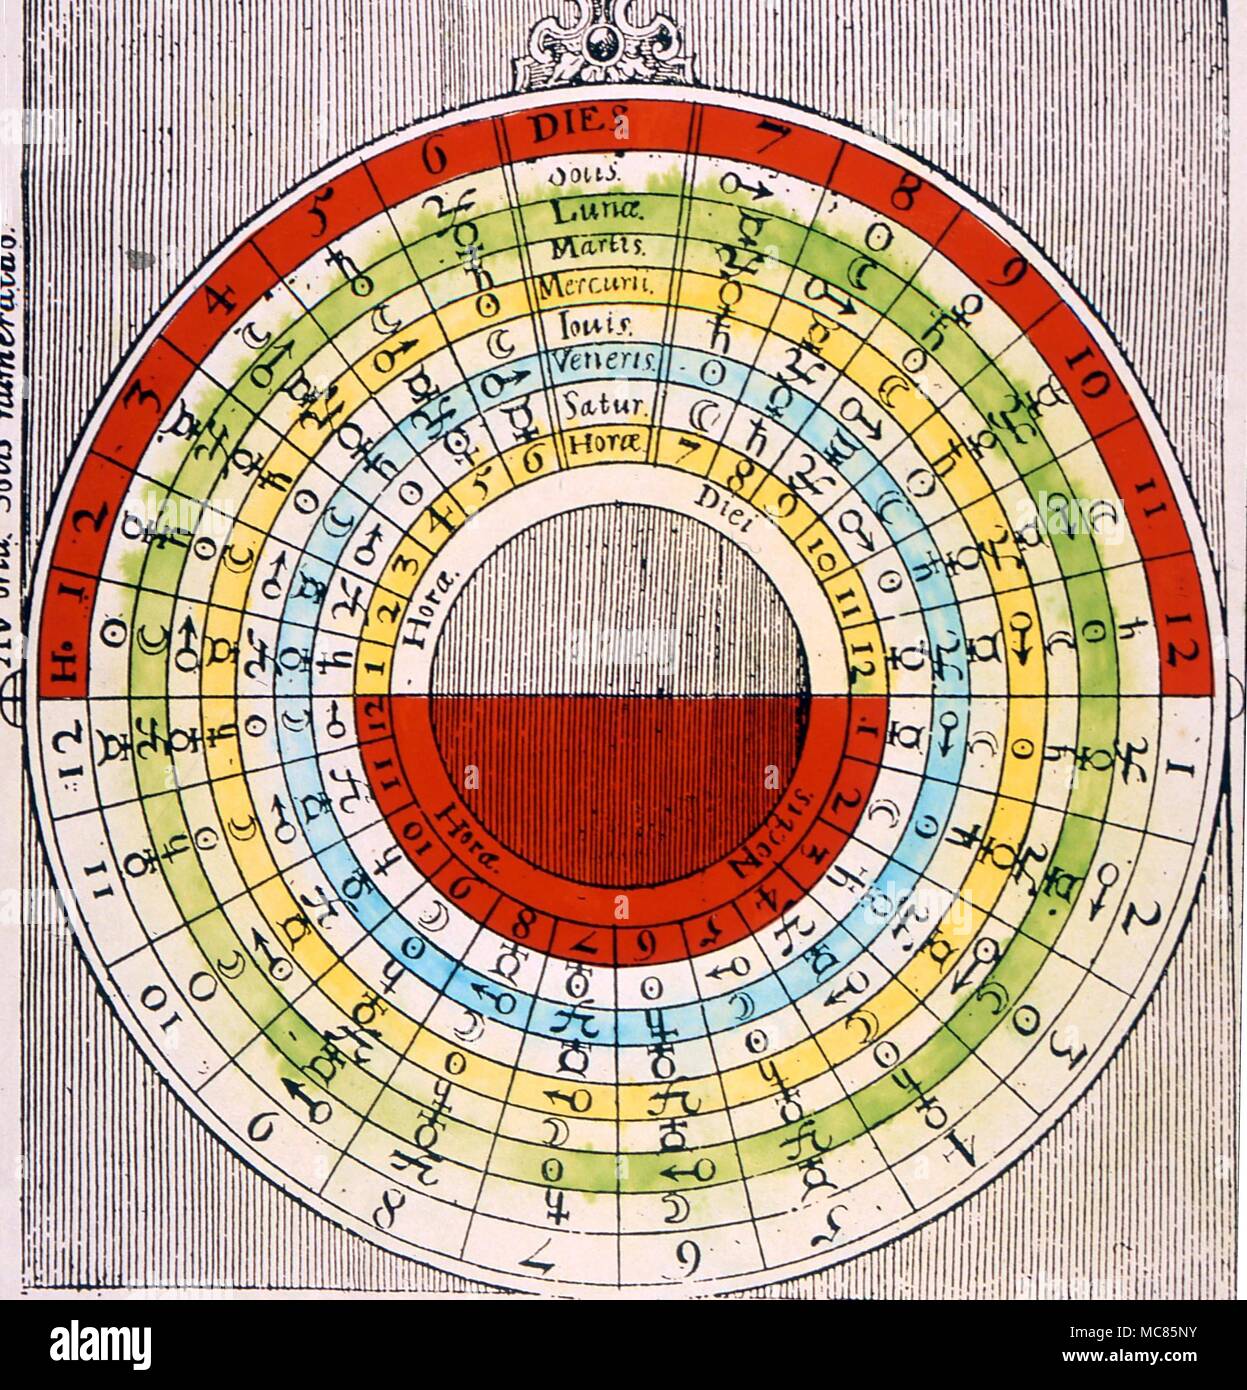 GRIMOIRE die Planetenstunden im grimoire Literatur die Planetenstunden manchmal Aszendenten aufgerufen werden. Dieses Diagramm, von fludd's "utriusque Cosmi Historia" von 1617, wird verwendet, um den Planeten für einen bestimmten Tag oder Nacht zu bestimmen Stockfoto